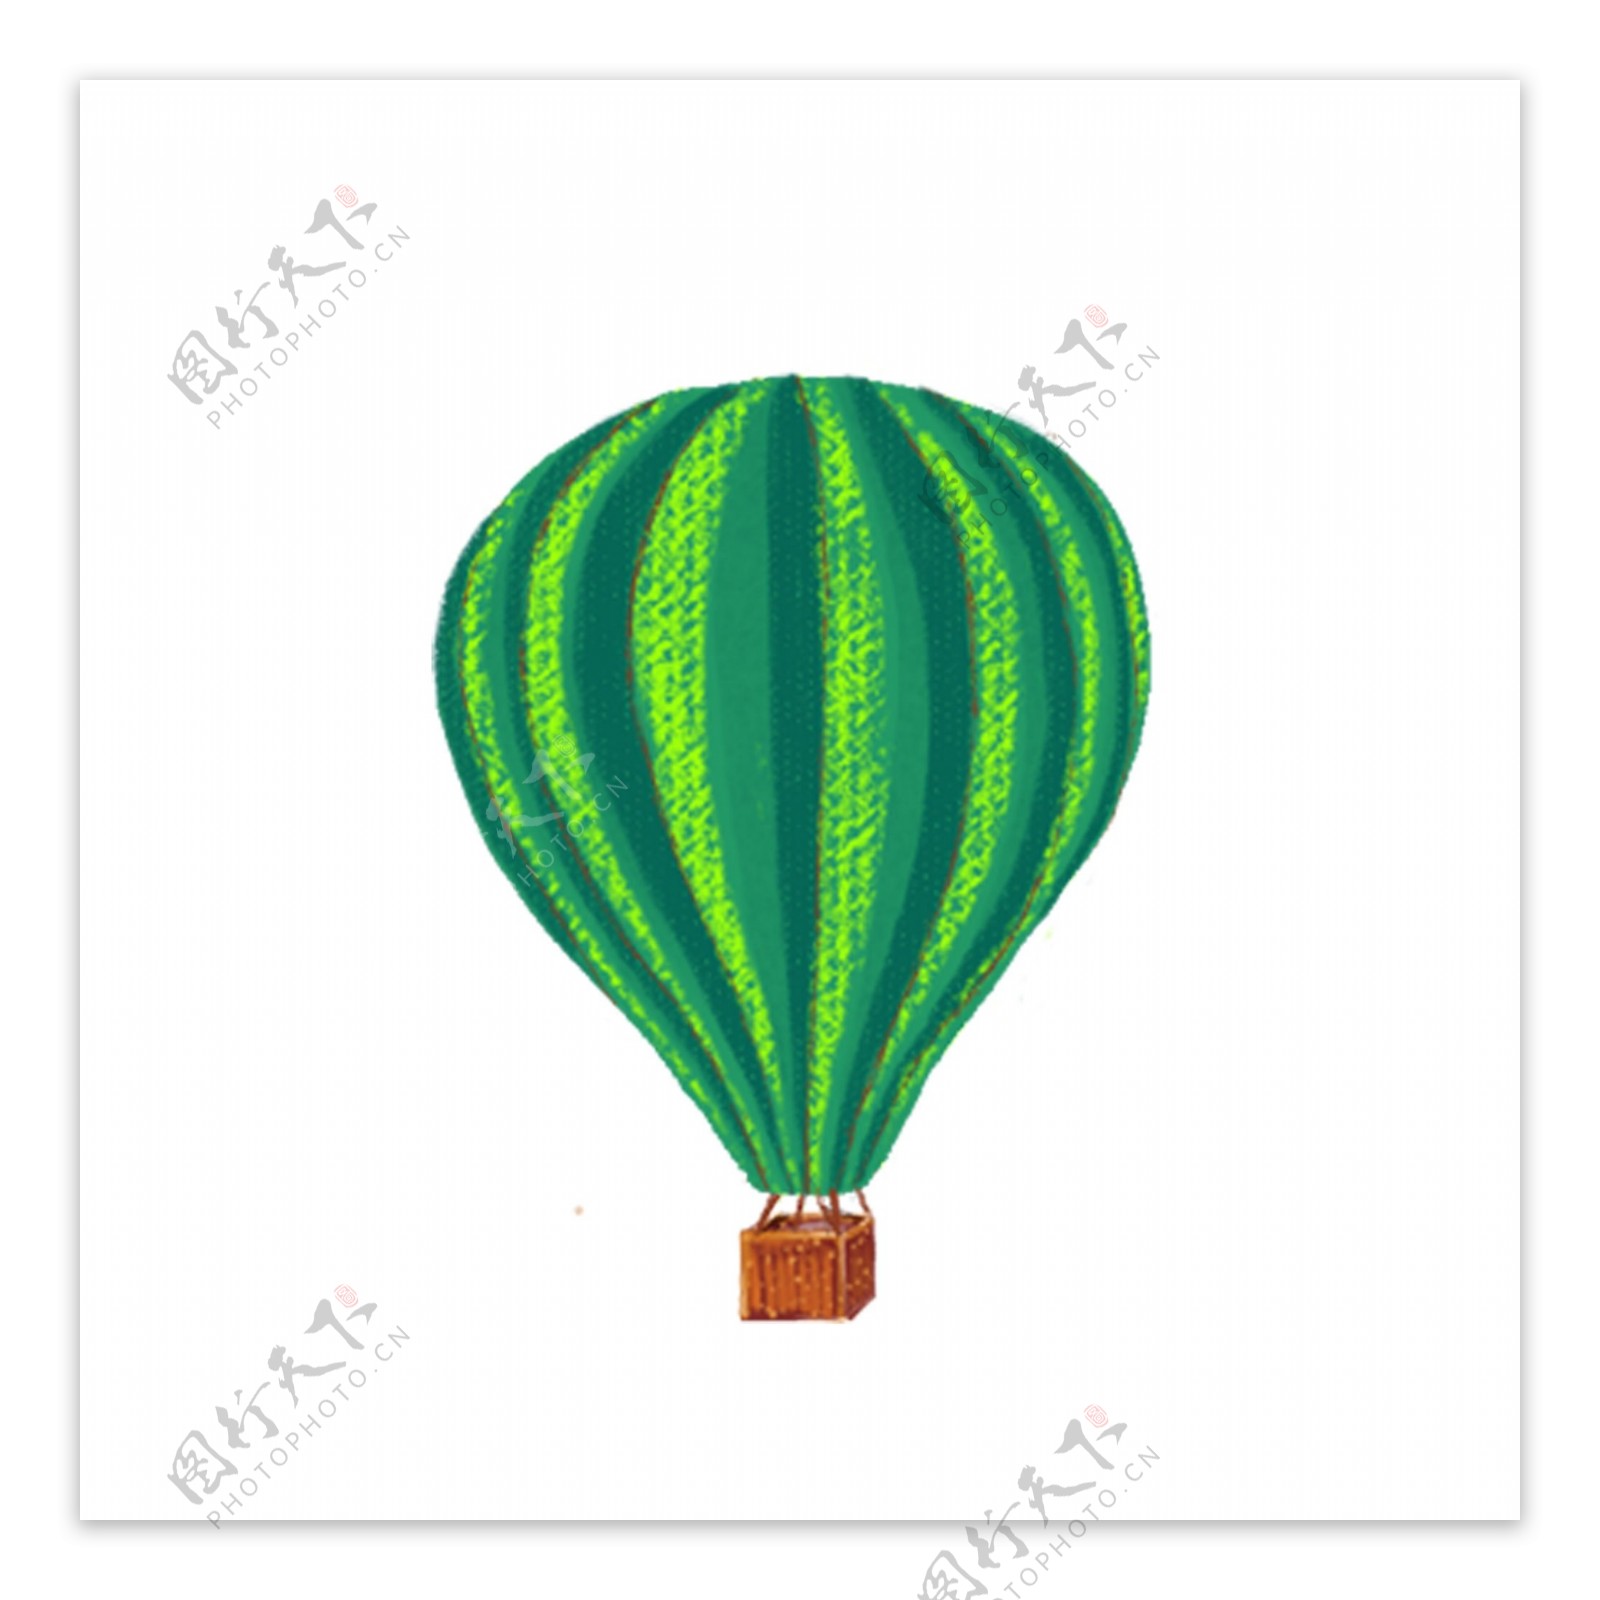 绿色圆弧创意气球元素